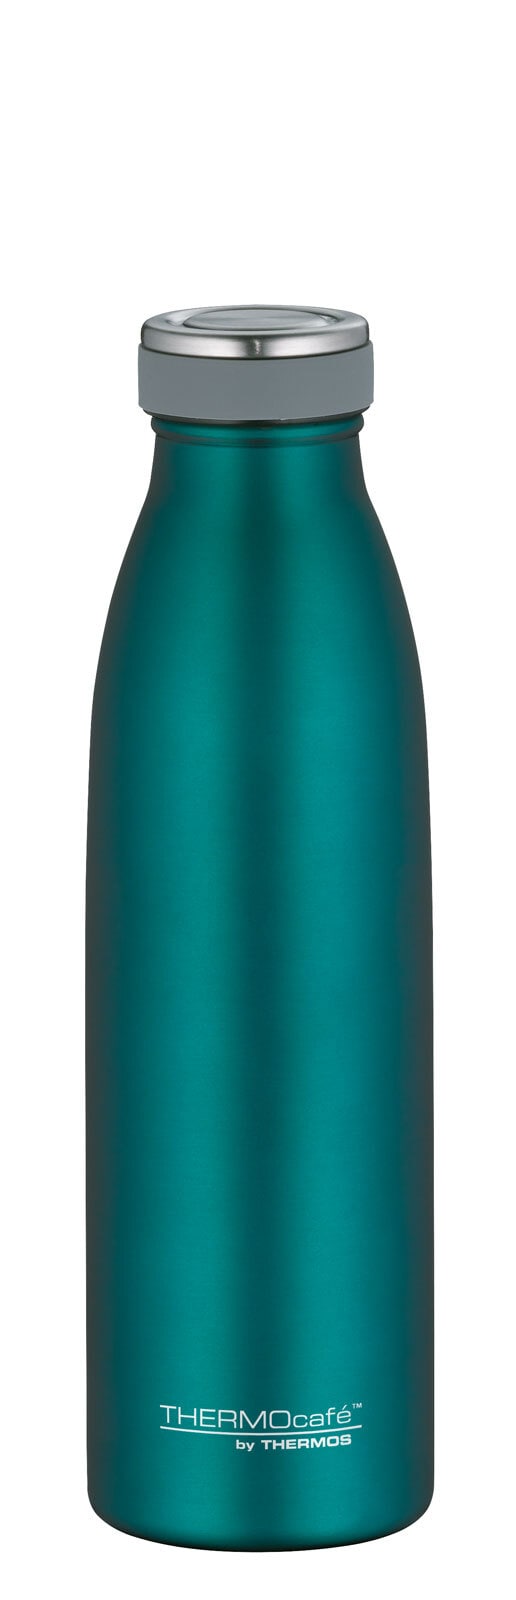 THERMOcafé by THERMOS Isolierflasche BOTTLE 500 ml Edelstahl grün matt